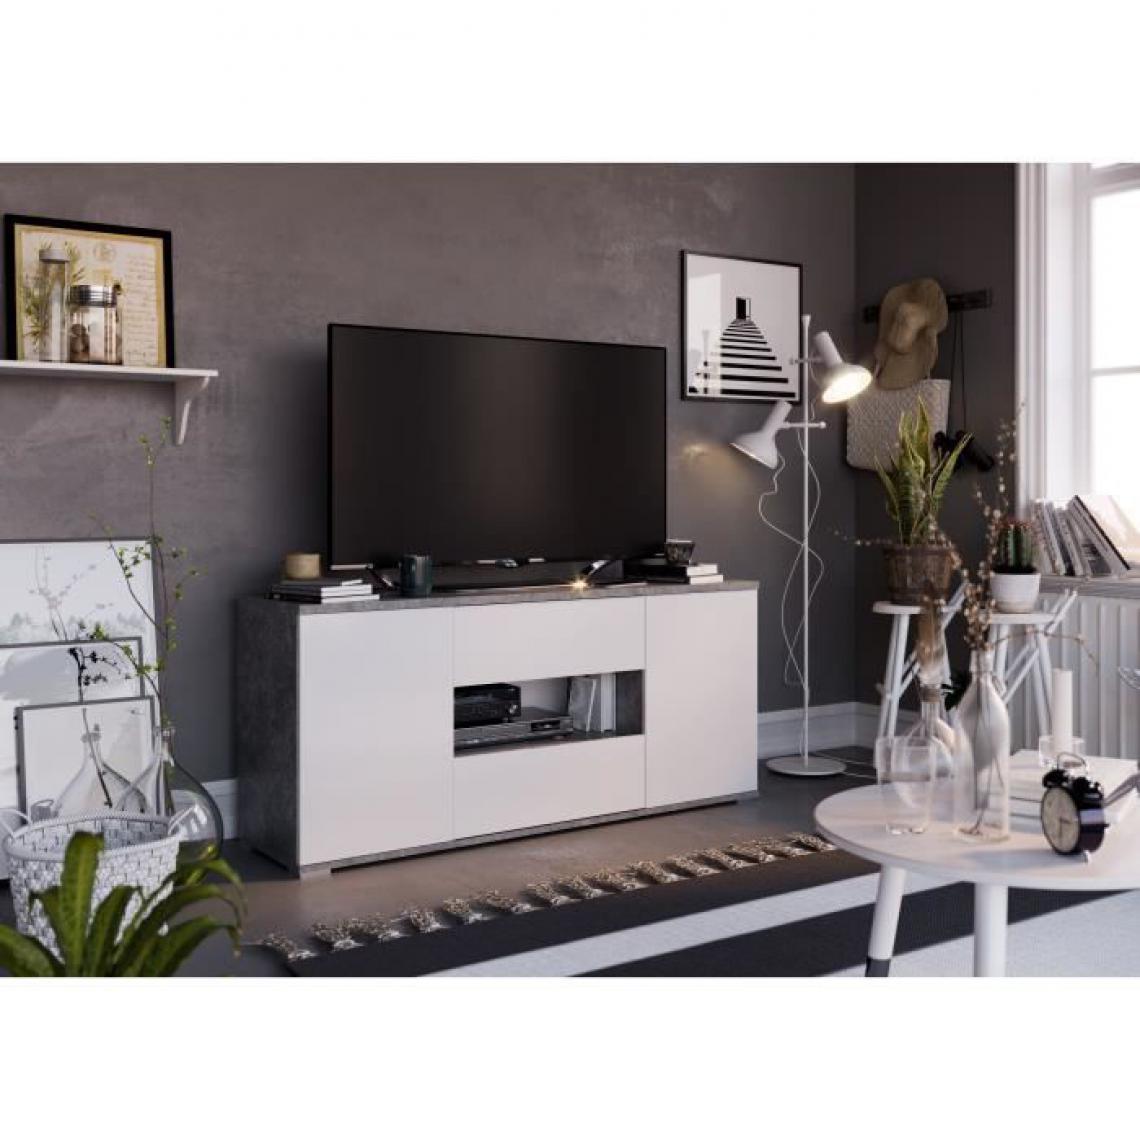 Cstore - CSTORE - star meuble tv 2 portes 2 tiroirs - décor béton et blanc - l 150xp 42xh 67 cm - Meubles TV, Hi-Fi